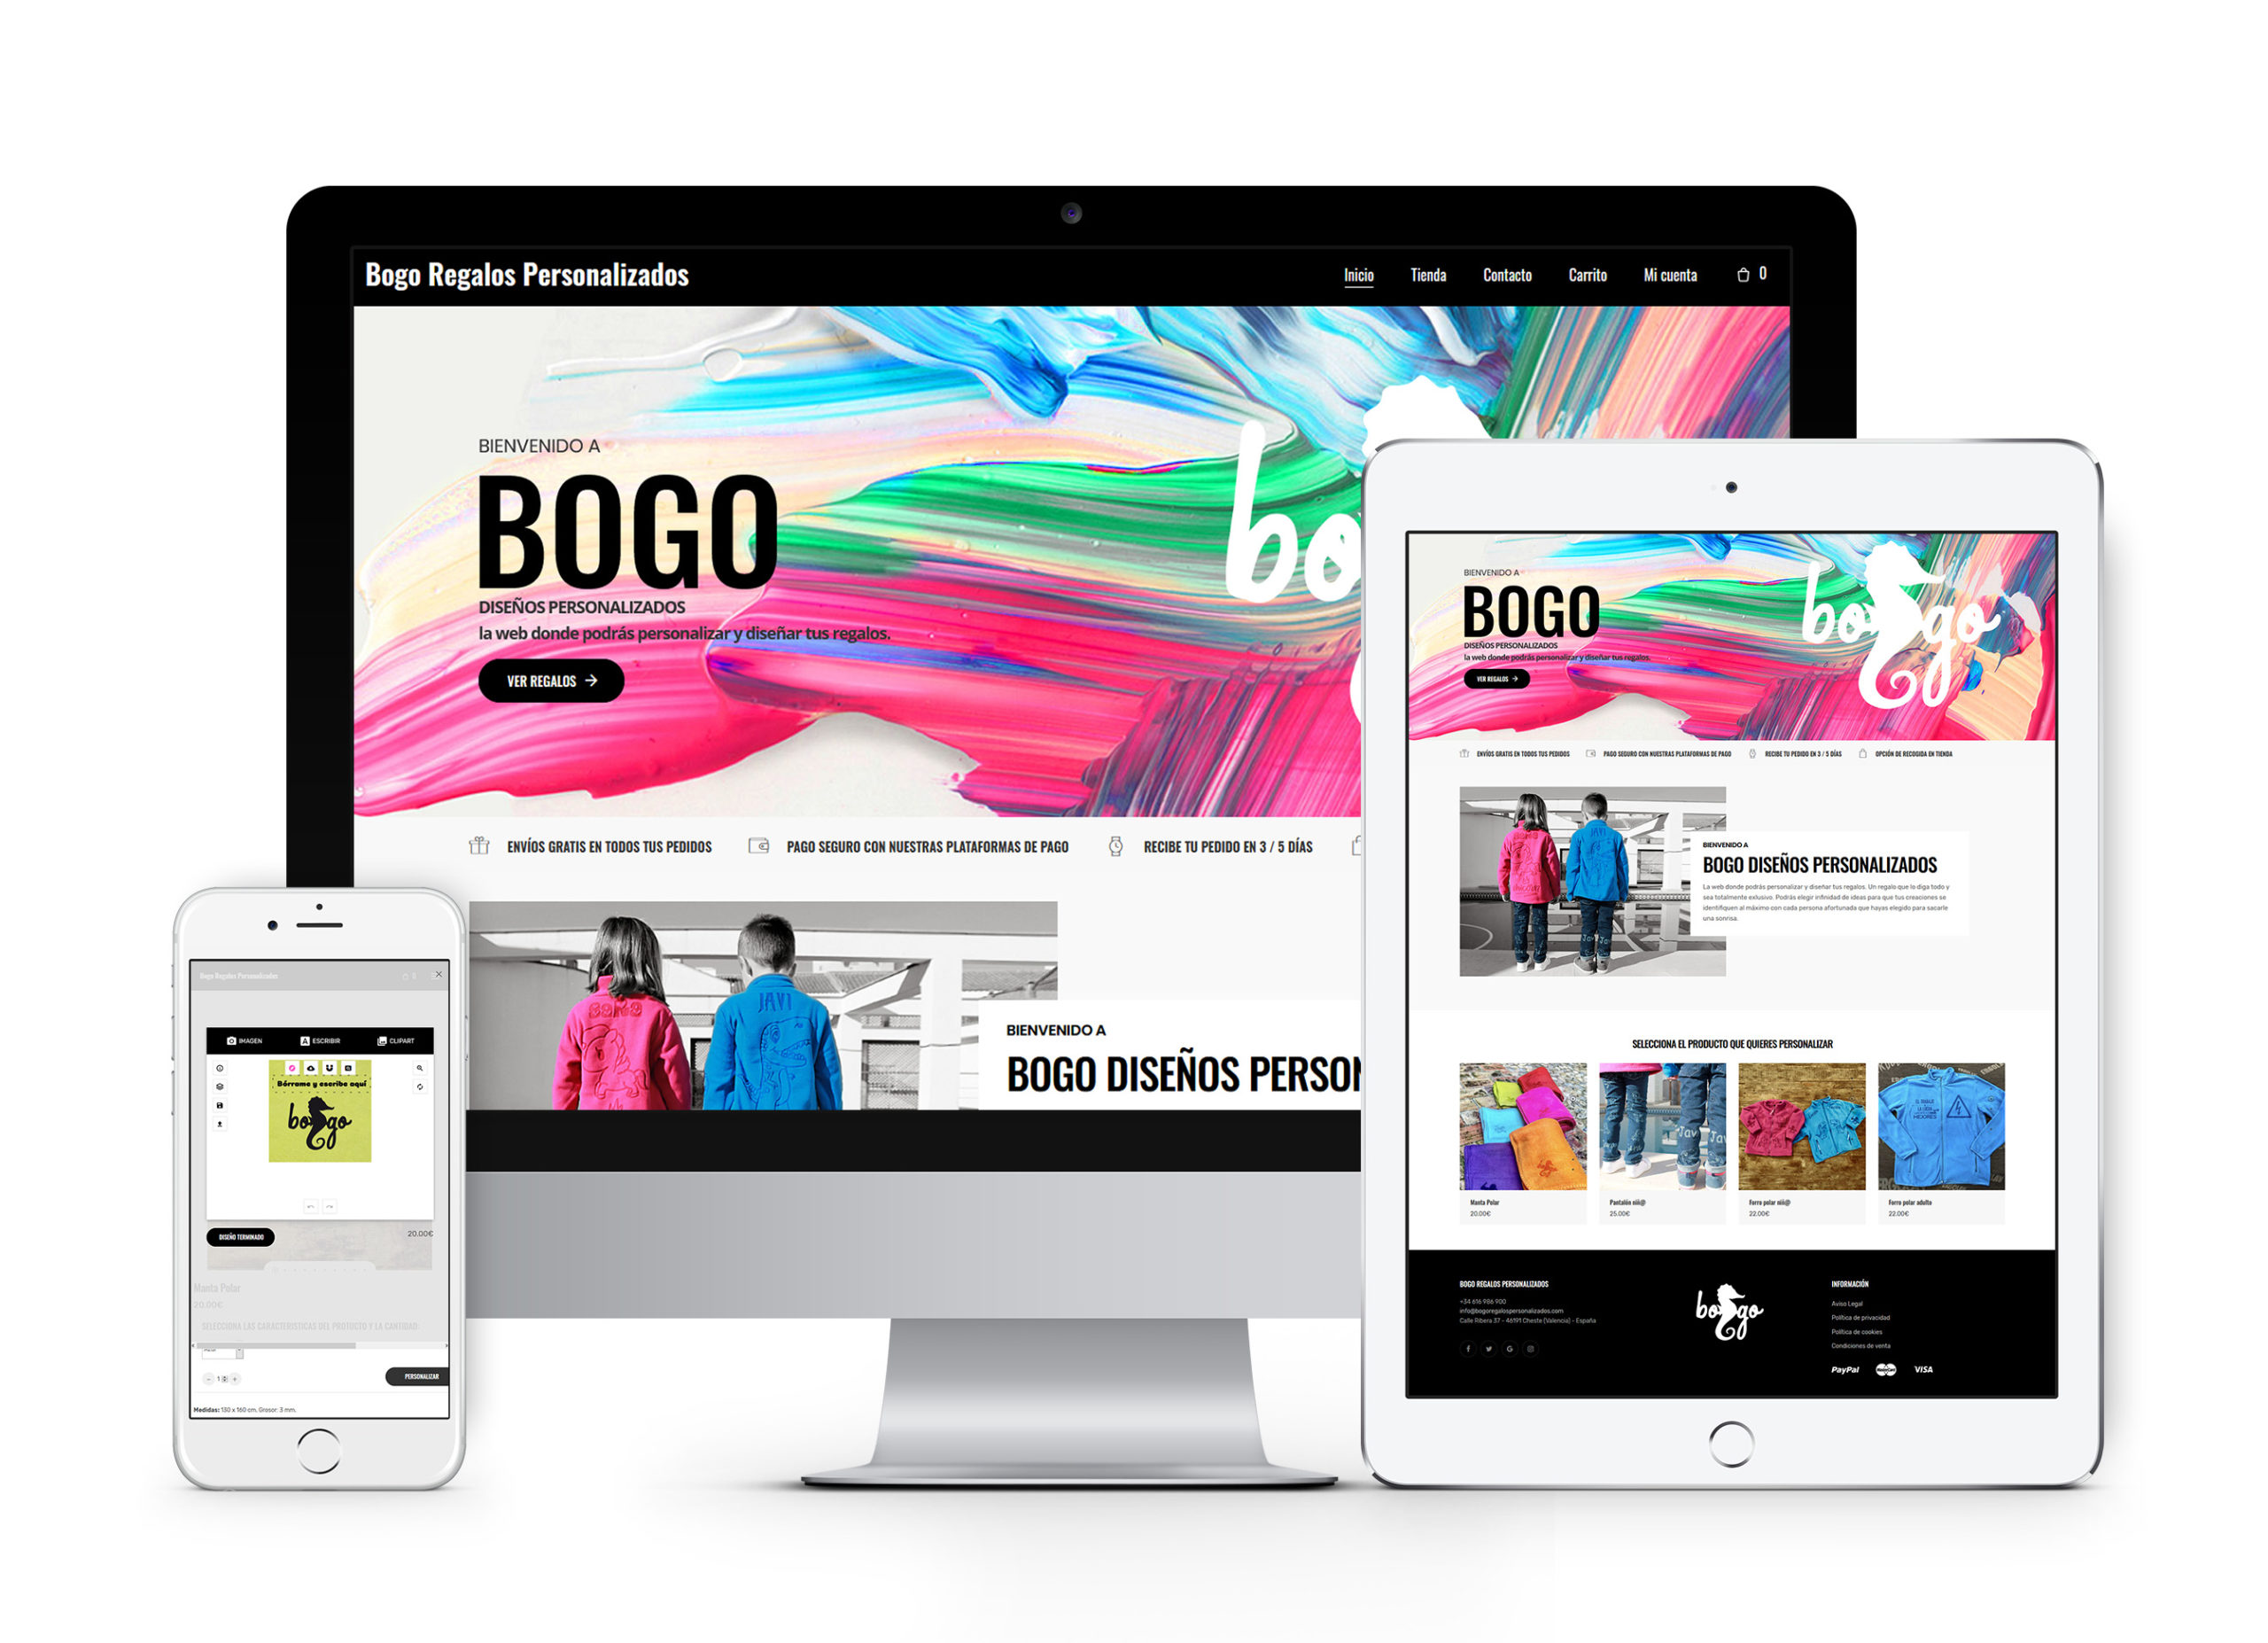 Bogo Regalos personalizados - Diseño de tienda online con personalizador de productos